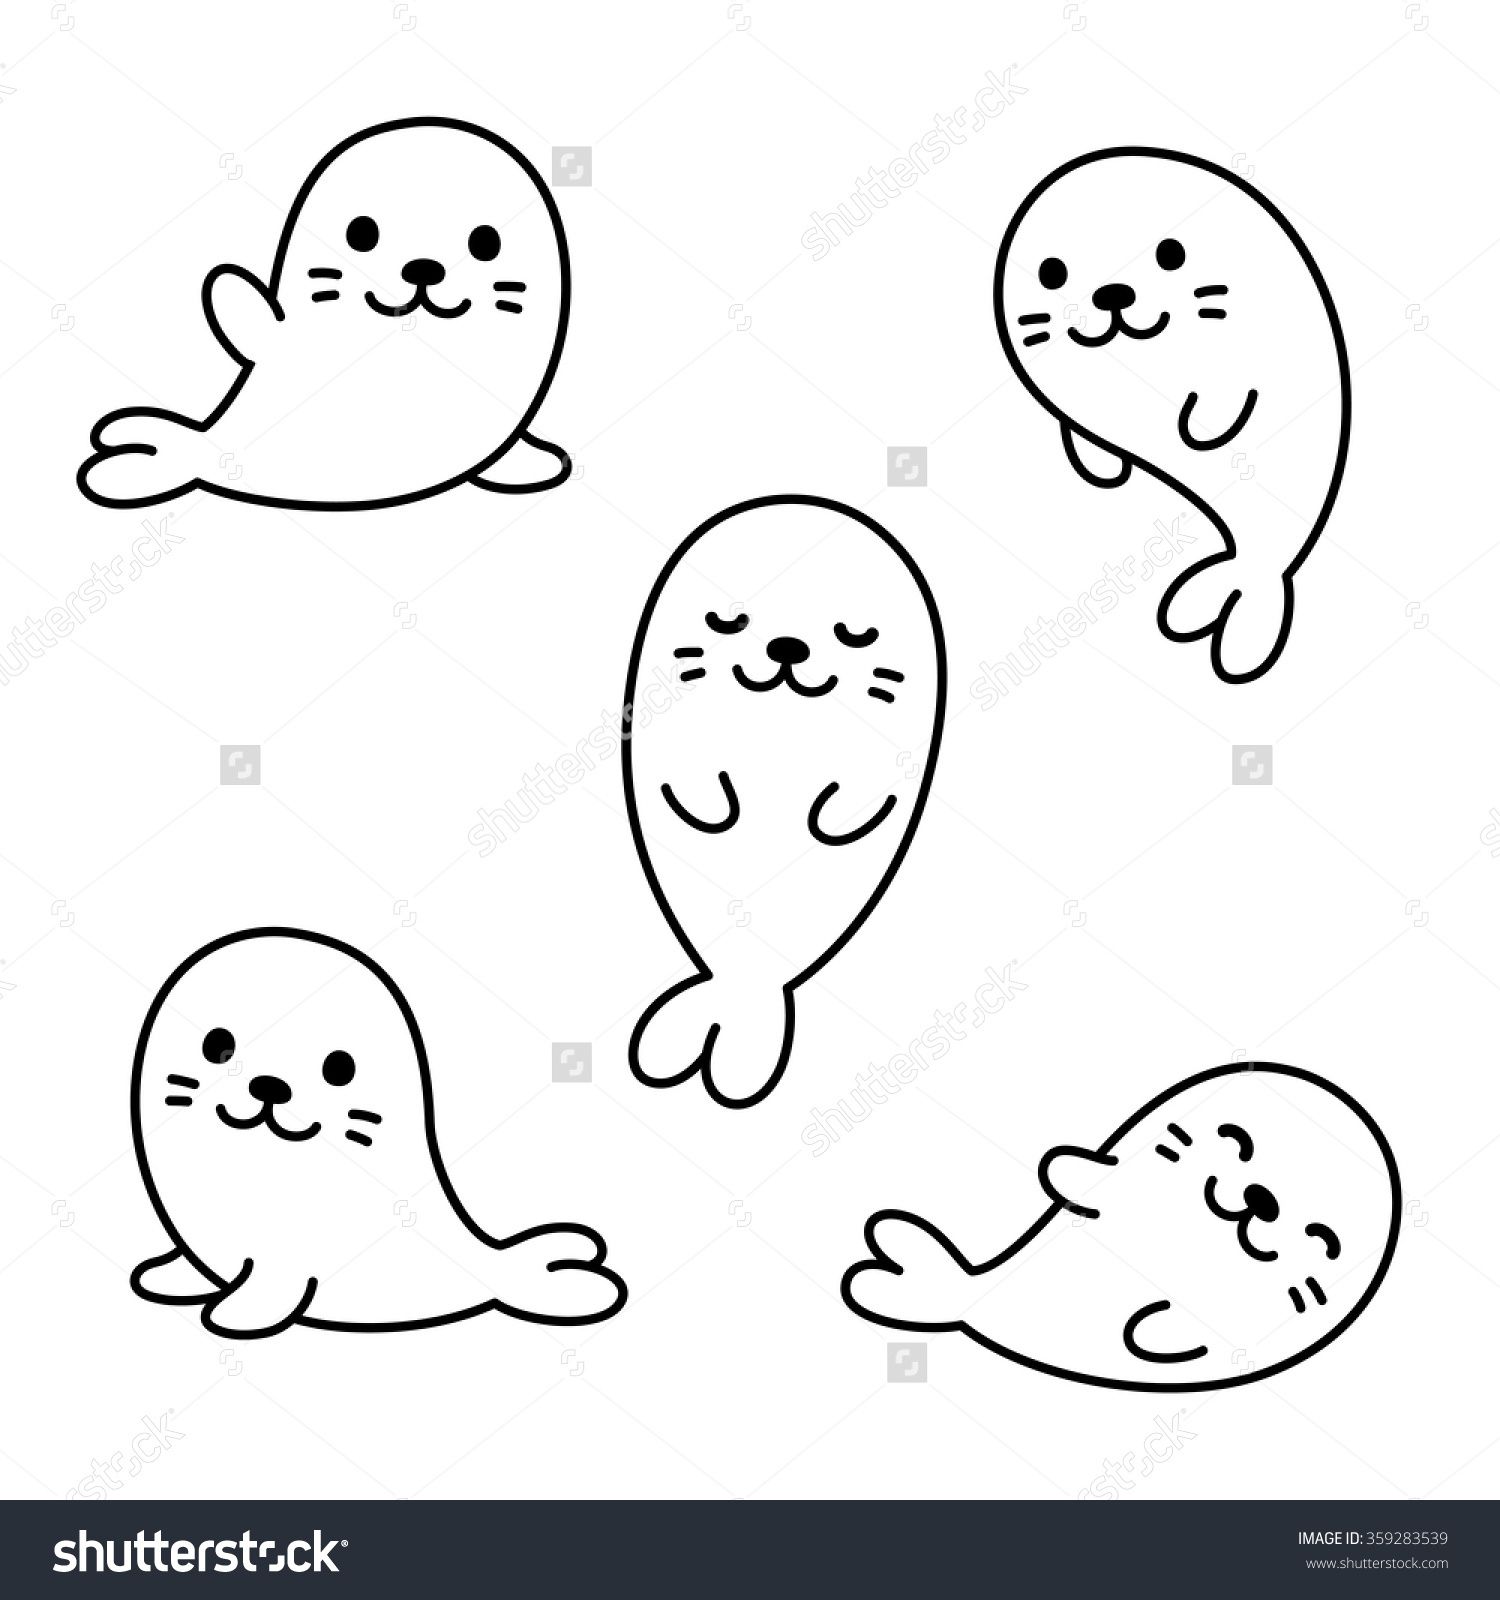 Cute seal drawing.